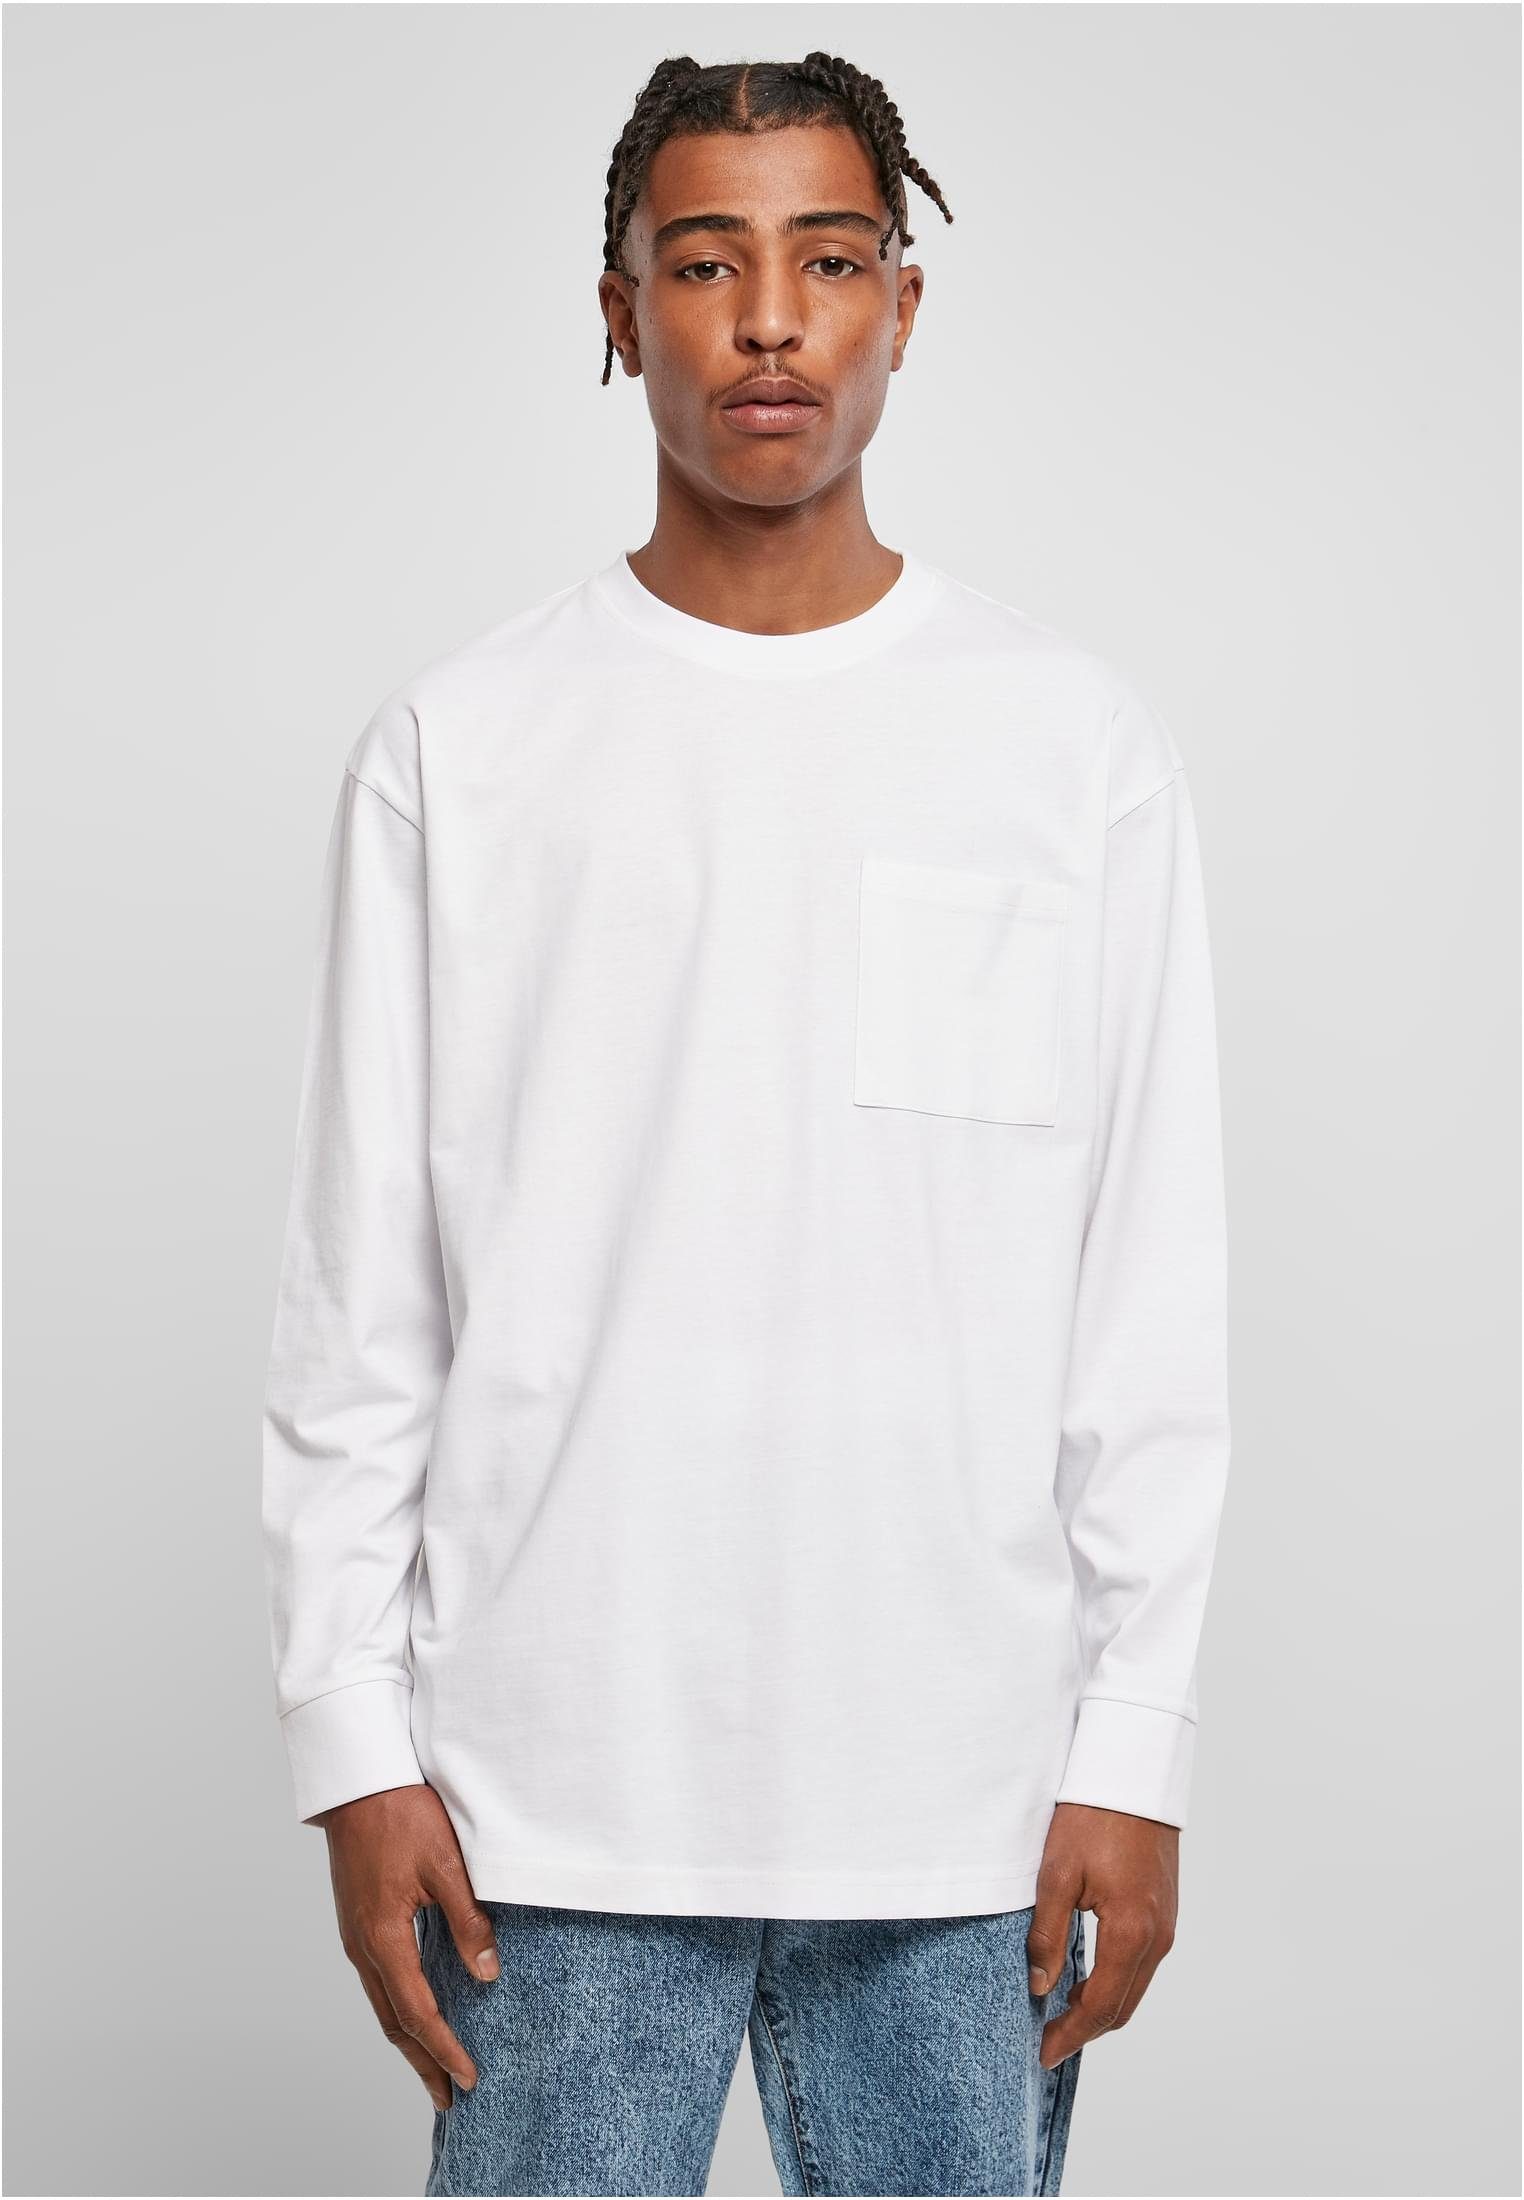 URBAN CLASSICS T-Shirt Herren (1-tlg) white Heavy Oversized Longsleeve Pocket